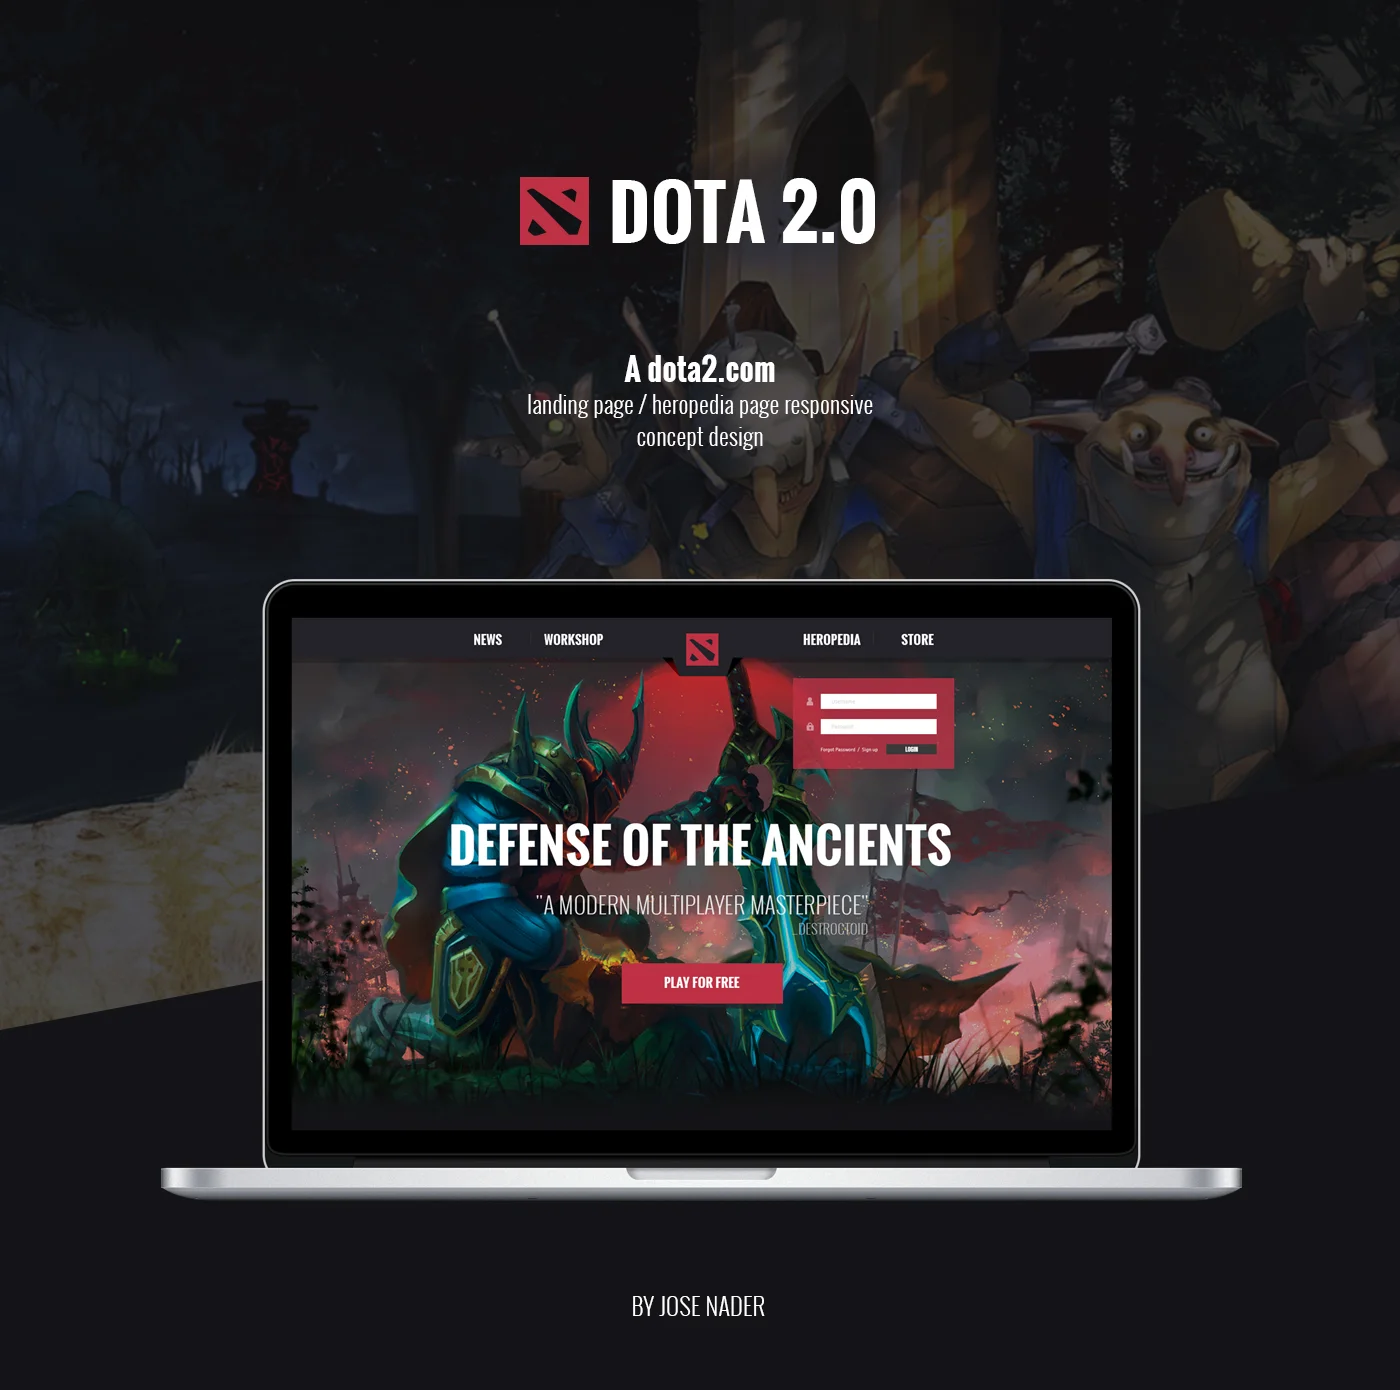 Фанатский концепт официального сайта Dota 2 выглядит свежо! Но нужен ли он Valve? - фото 1